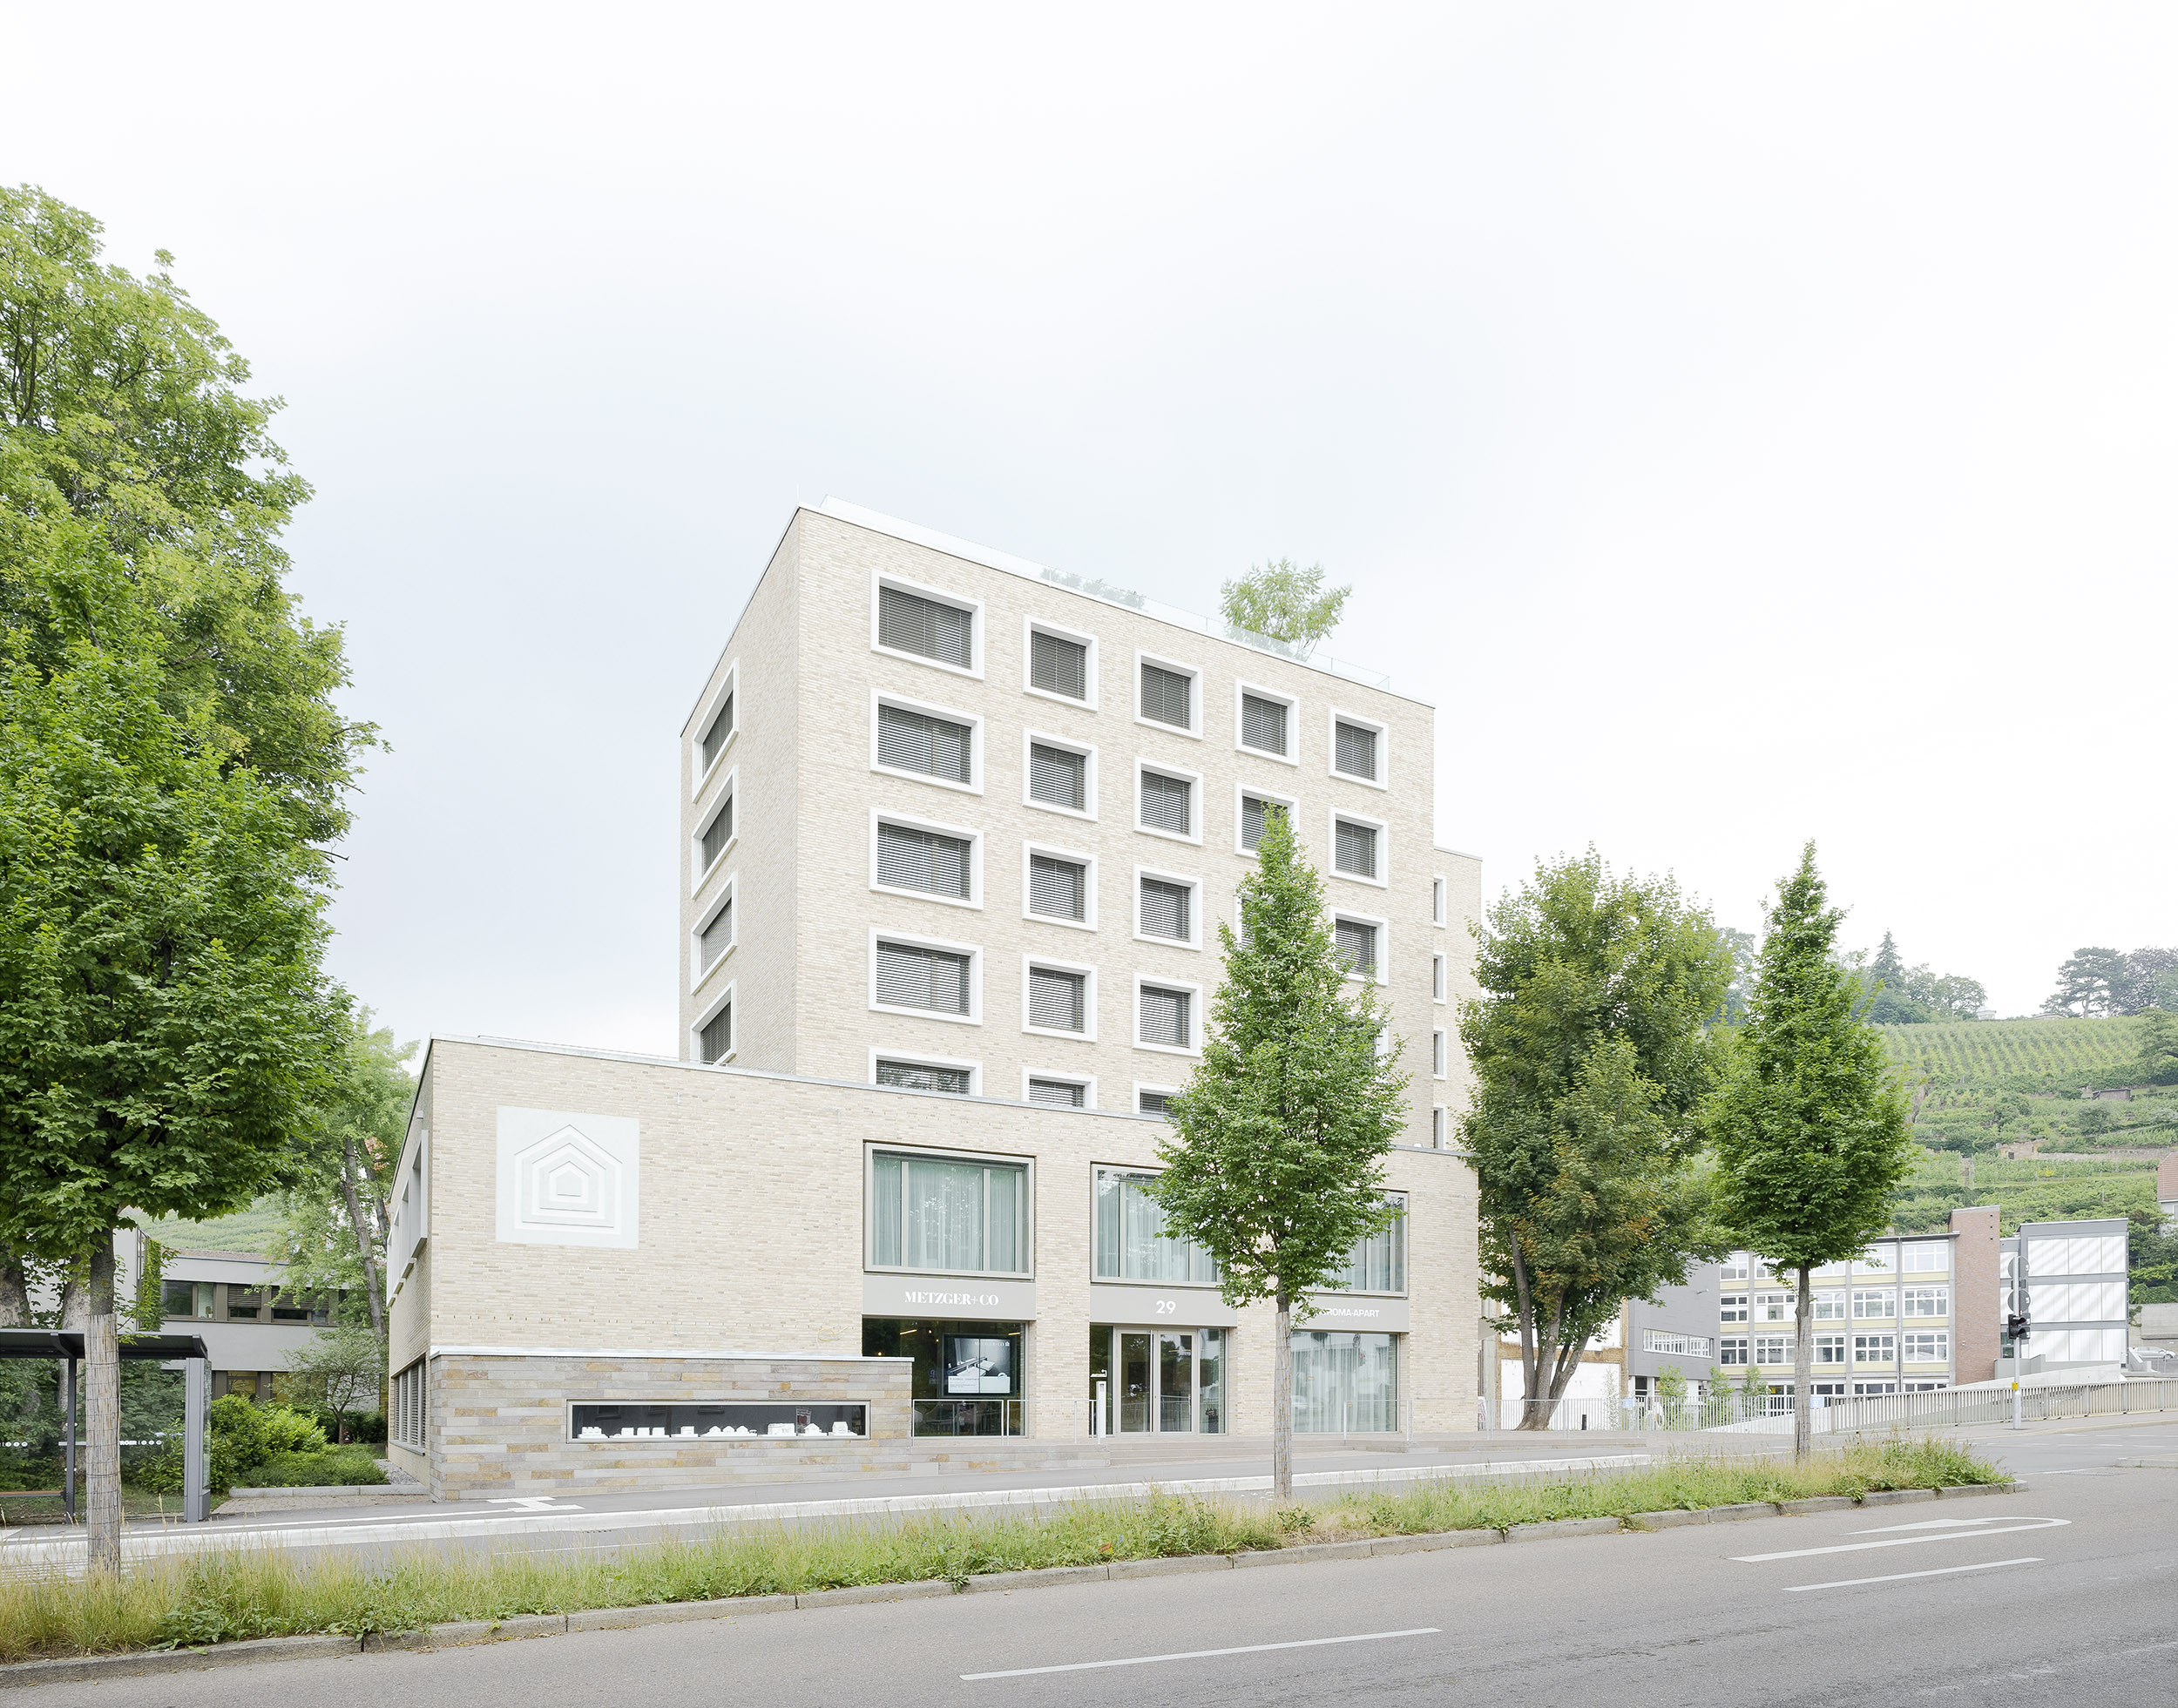 kaestle&ocker - Büro & Apartmentgebäude